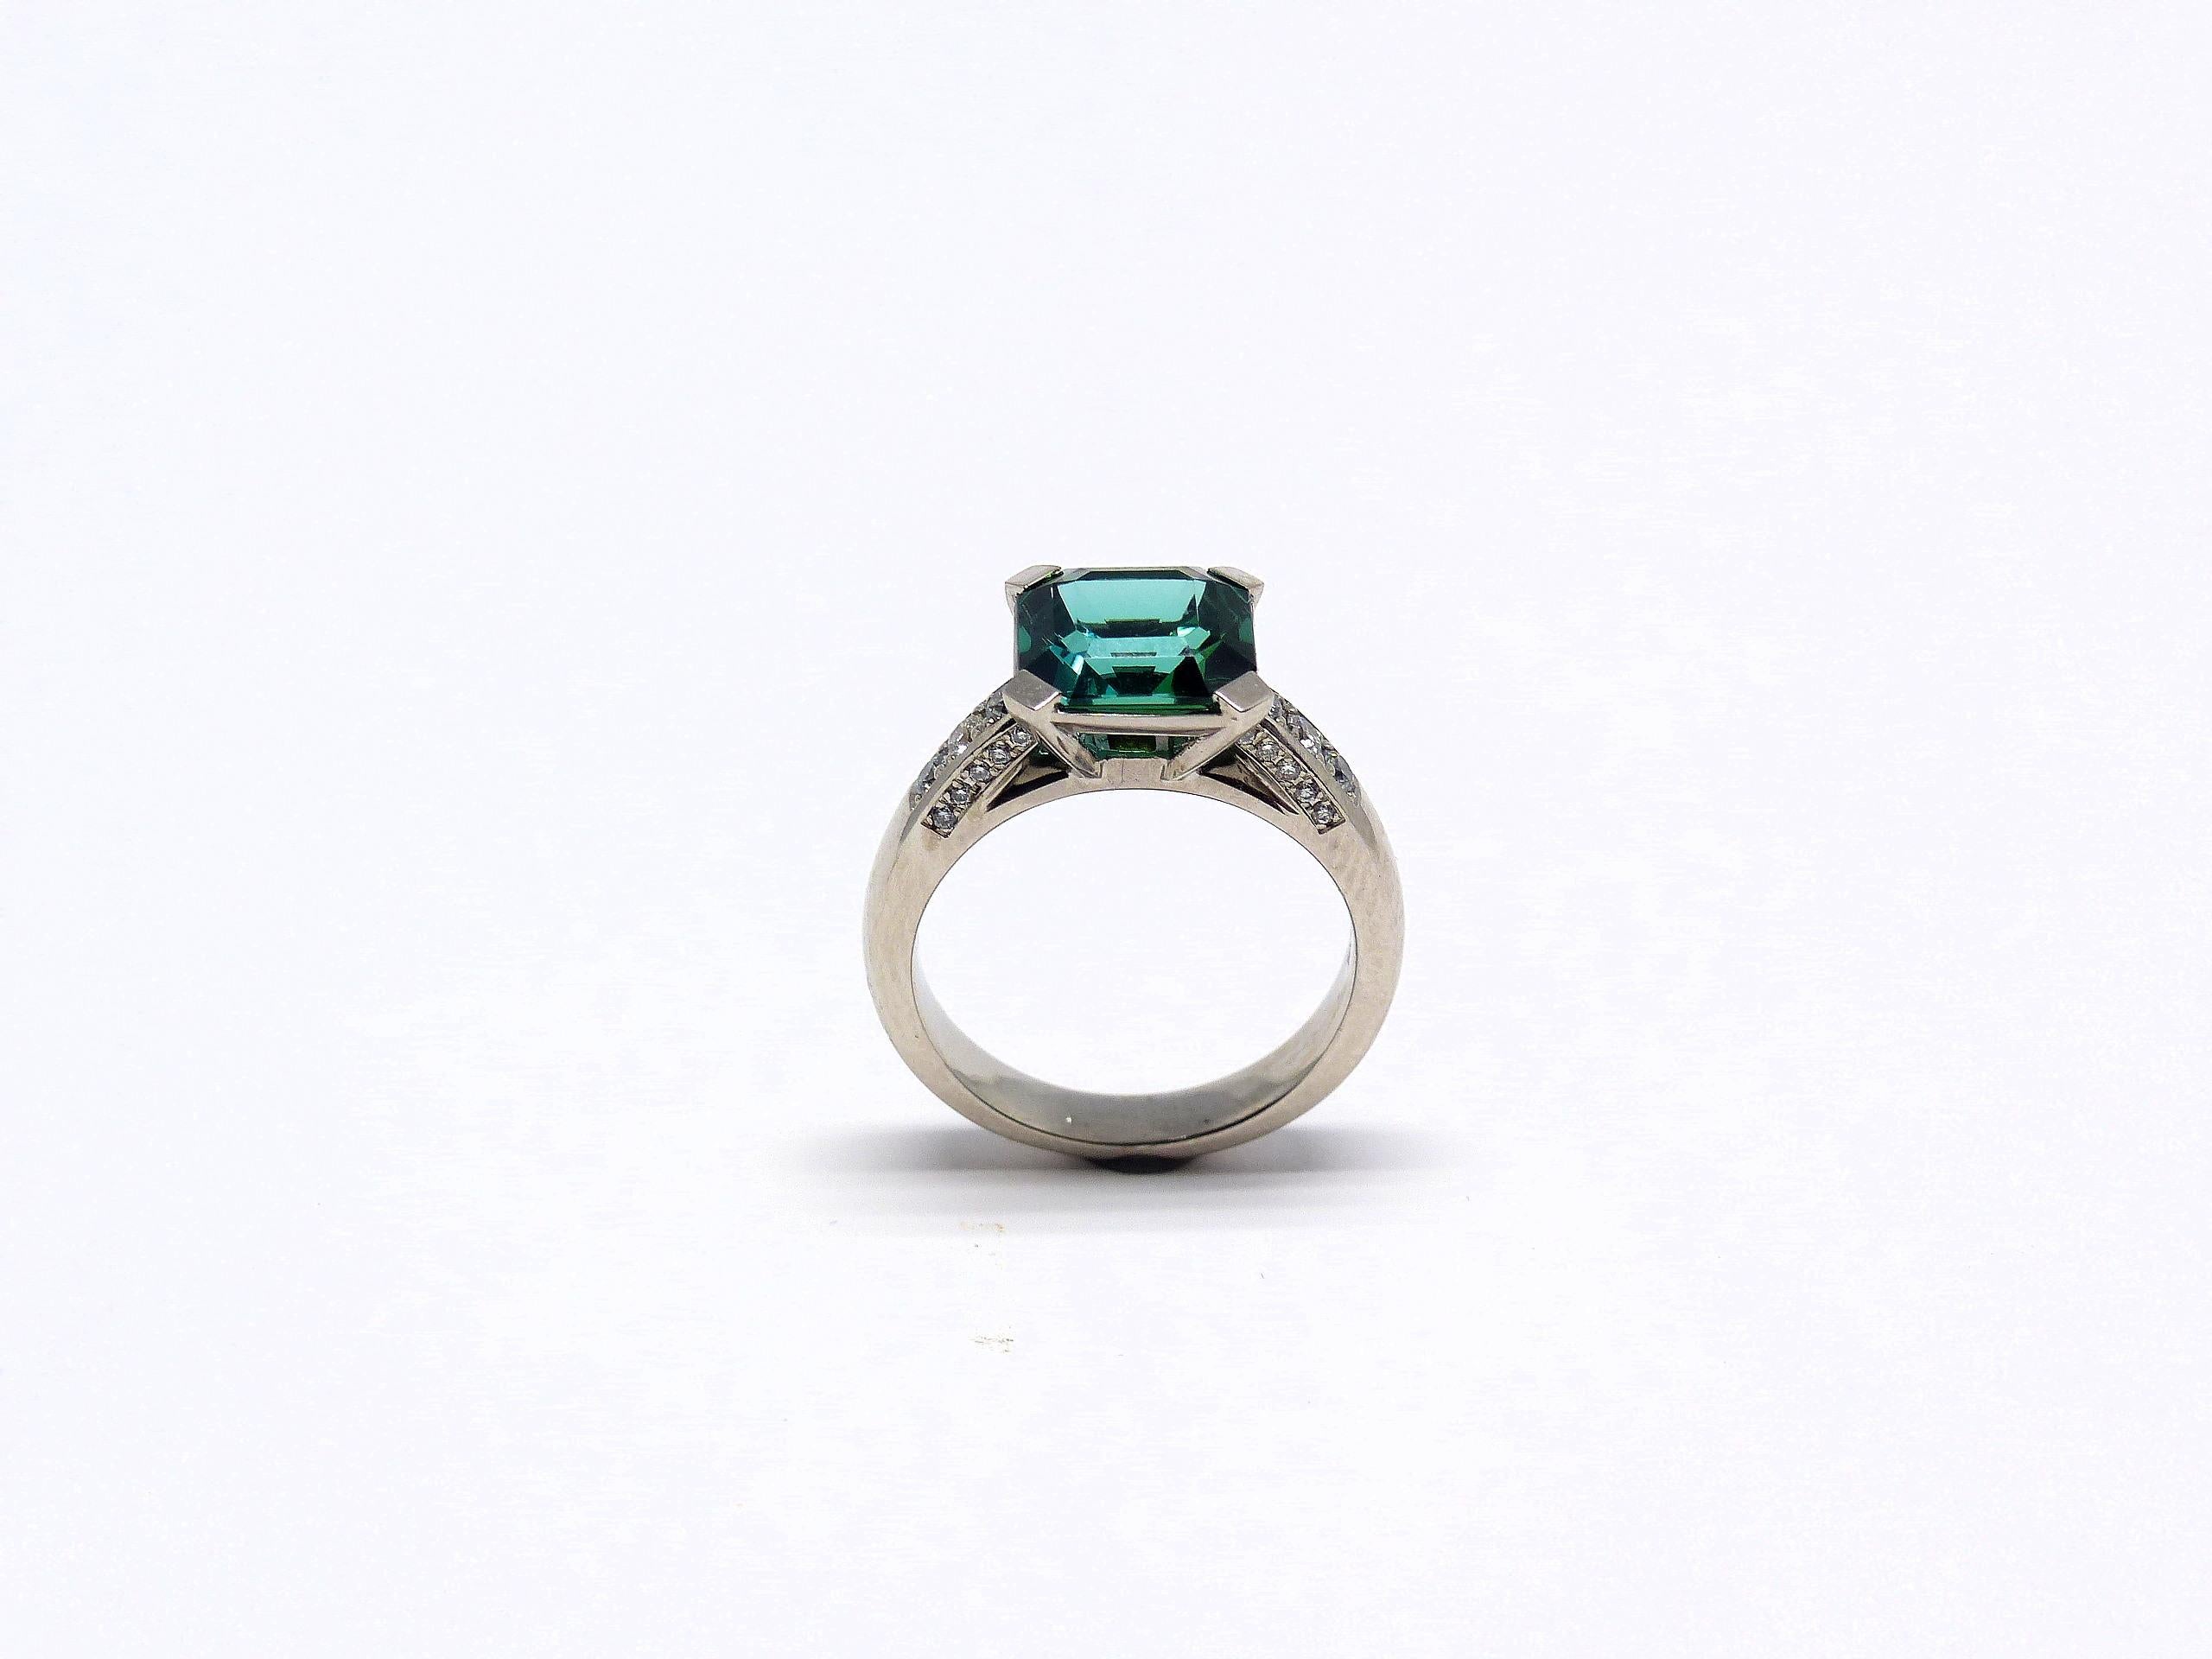 Thomas Leyser ist bekannt für seine zeitgenössischen Schmuckentwürfe unter Verwendung edler Edelsteine. 

Dieser Ring aus 18-karätigem Weißgold (8,30 g) ist mit 1x feinem, intensiv grün-blauem Turmalin (facettiert, 9x9 mm, 3,20ct) + 26x Diamanten